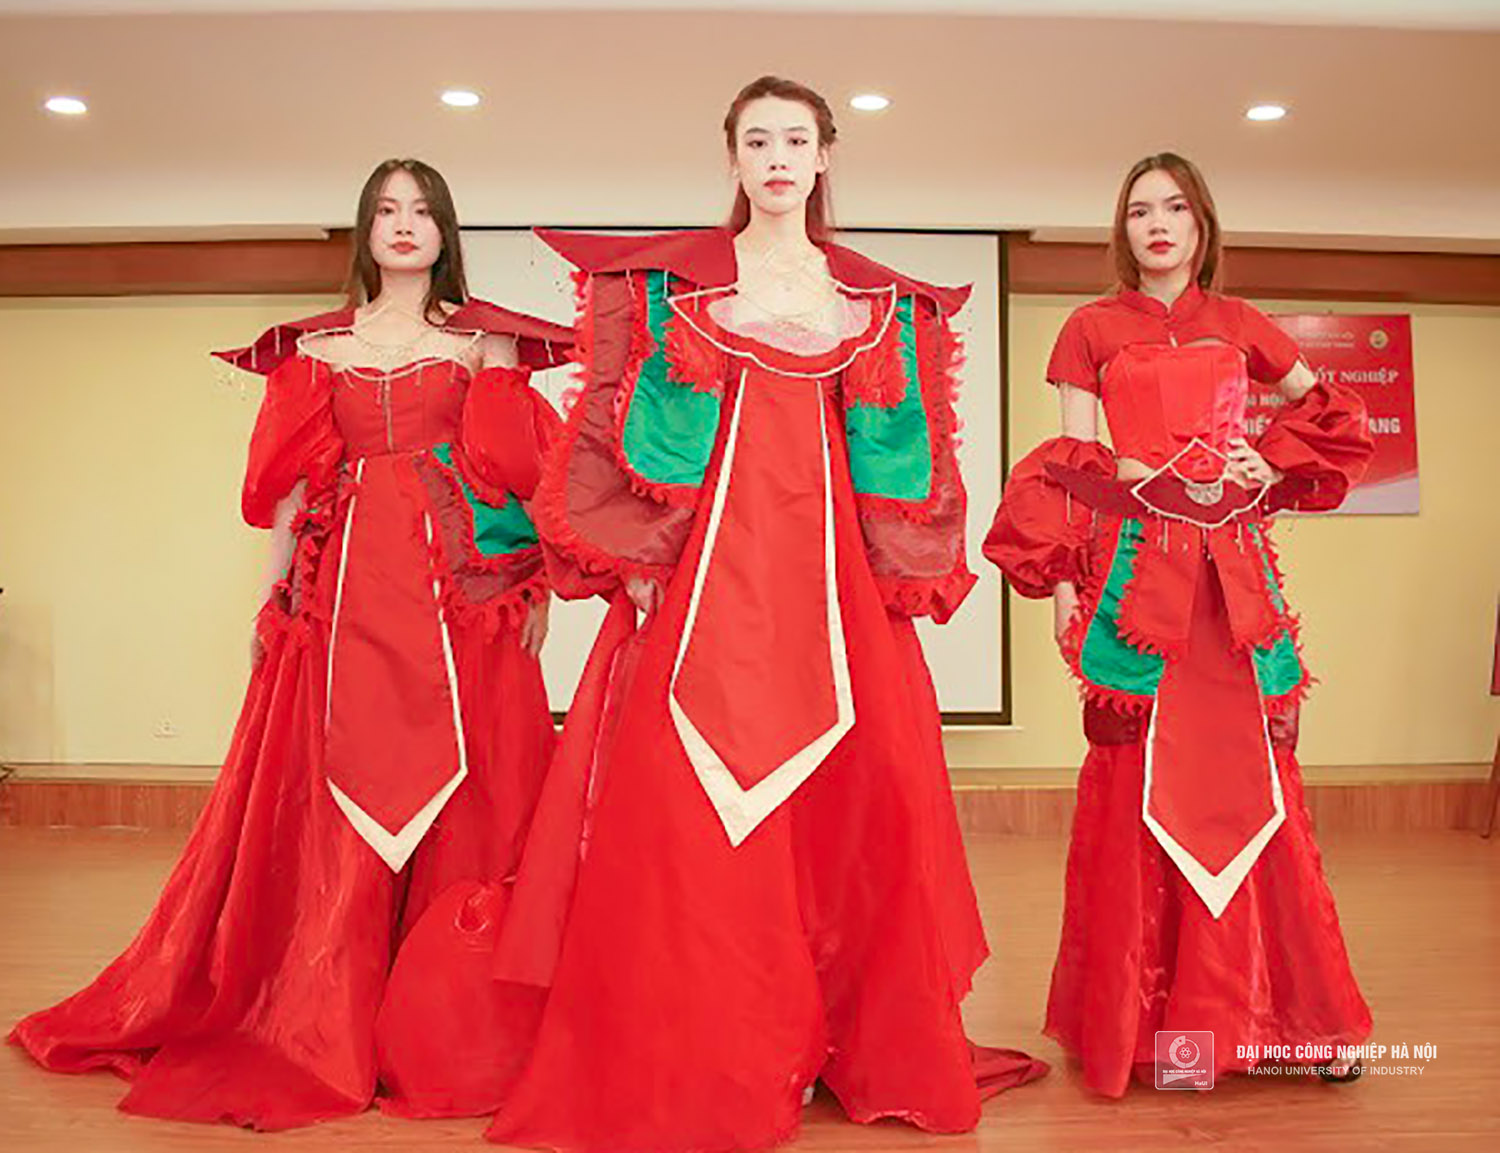 Ngành Thiết kế thời trang tại Trường Đại học Công nghiệp Hà Nội